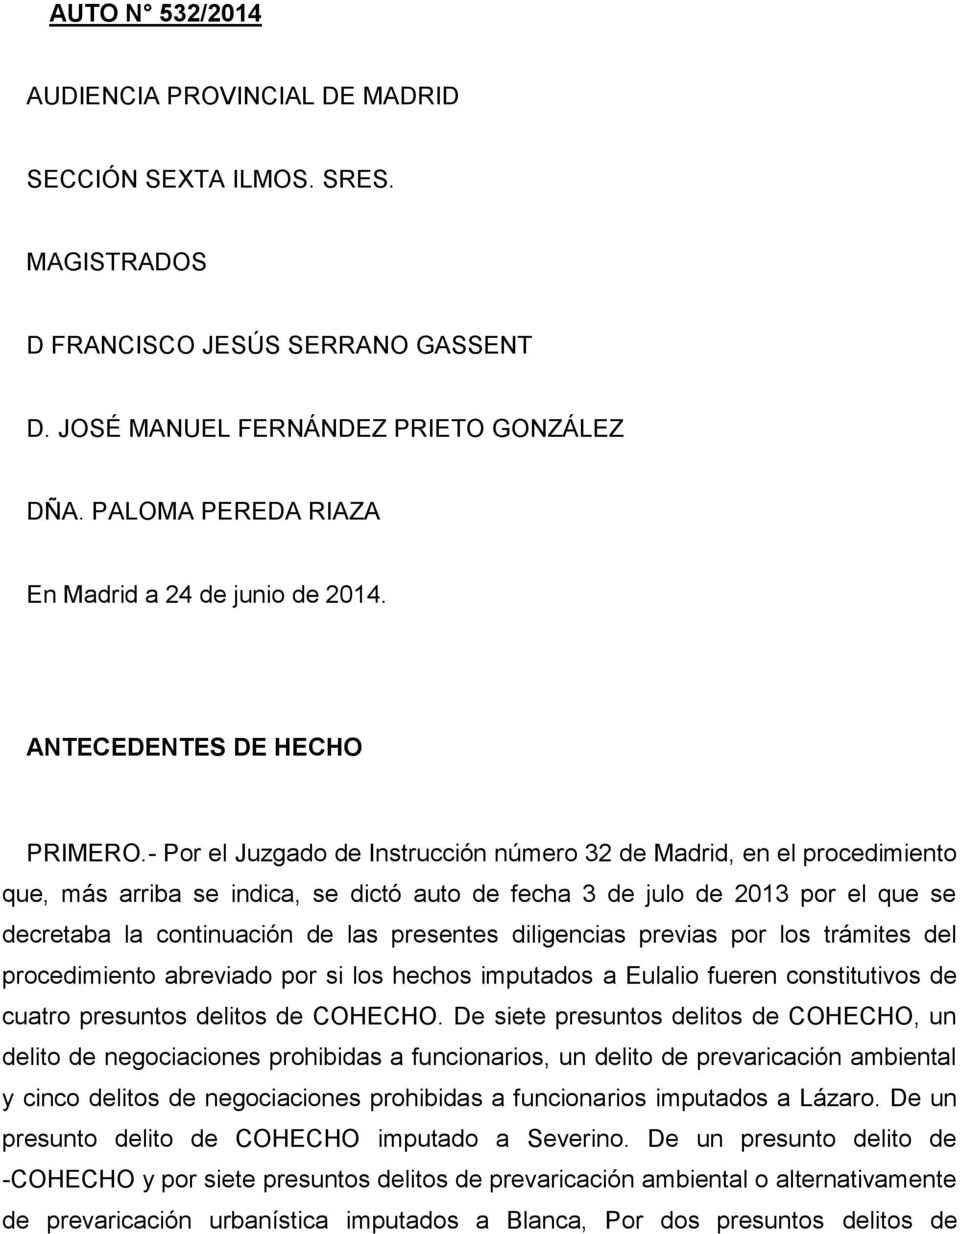 - Por el Juzgado de Instrucción número 32 de Madrid, en el procedimiento que, más arriba se indica, se dictó auto de fecha 3 de julo de 2013 por el que se decretaba la continuación de las presentes